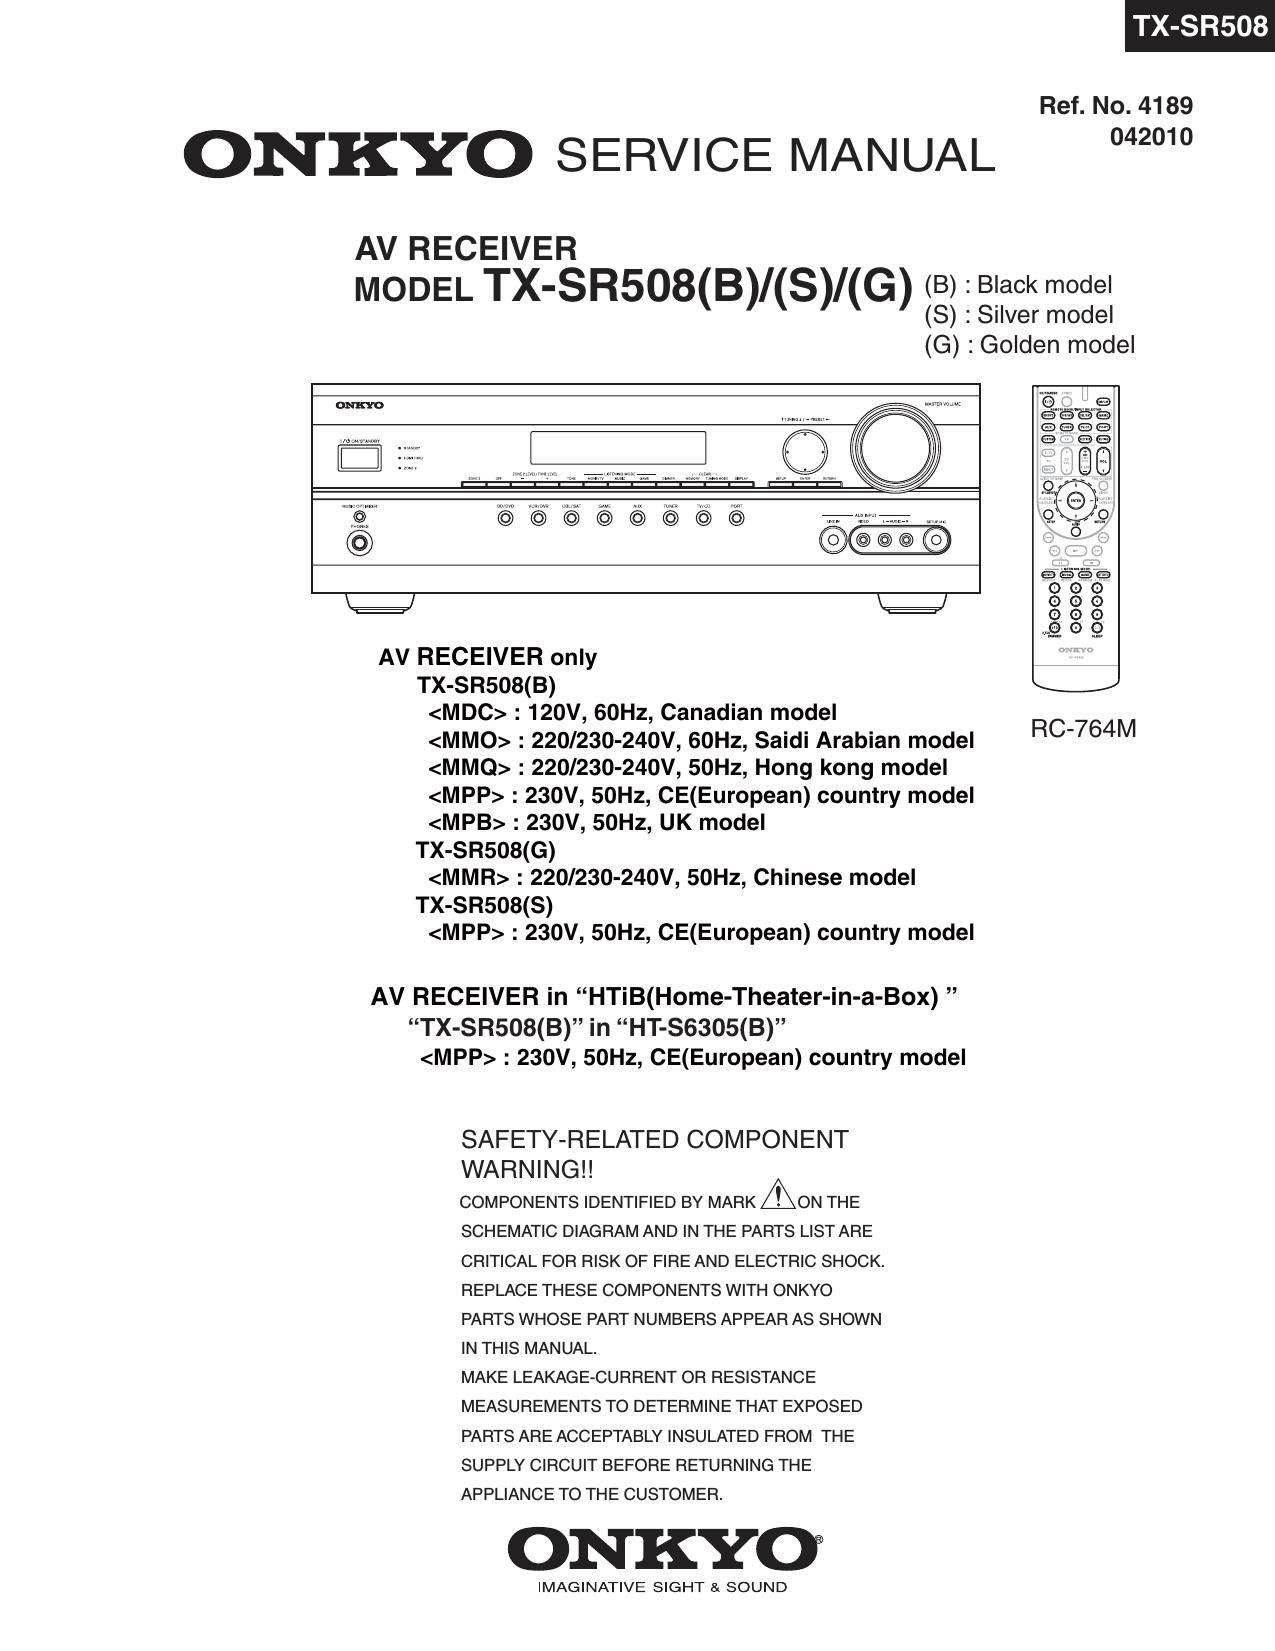 Onkyo TXSR 508 Service Manual